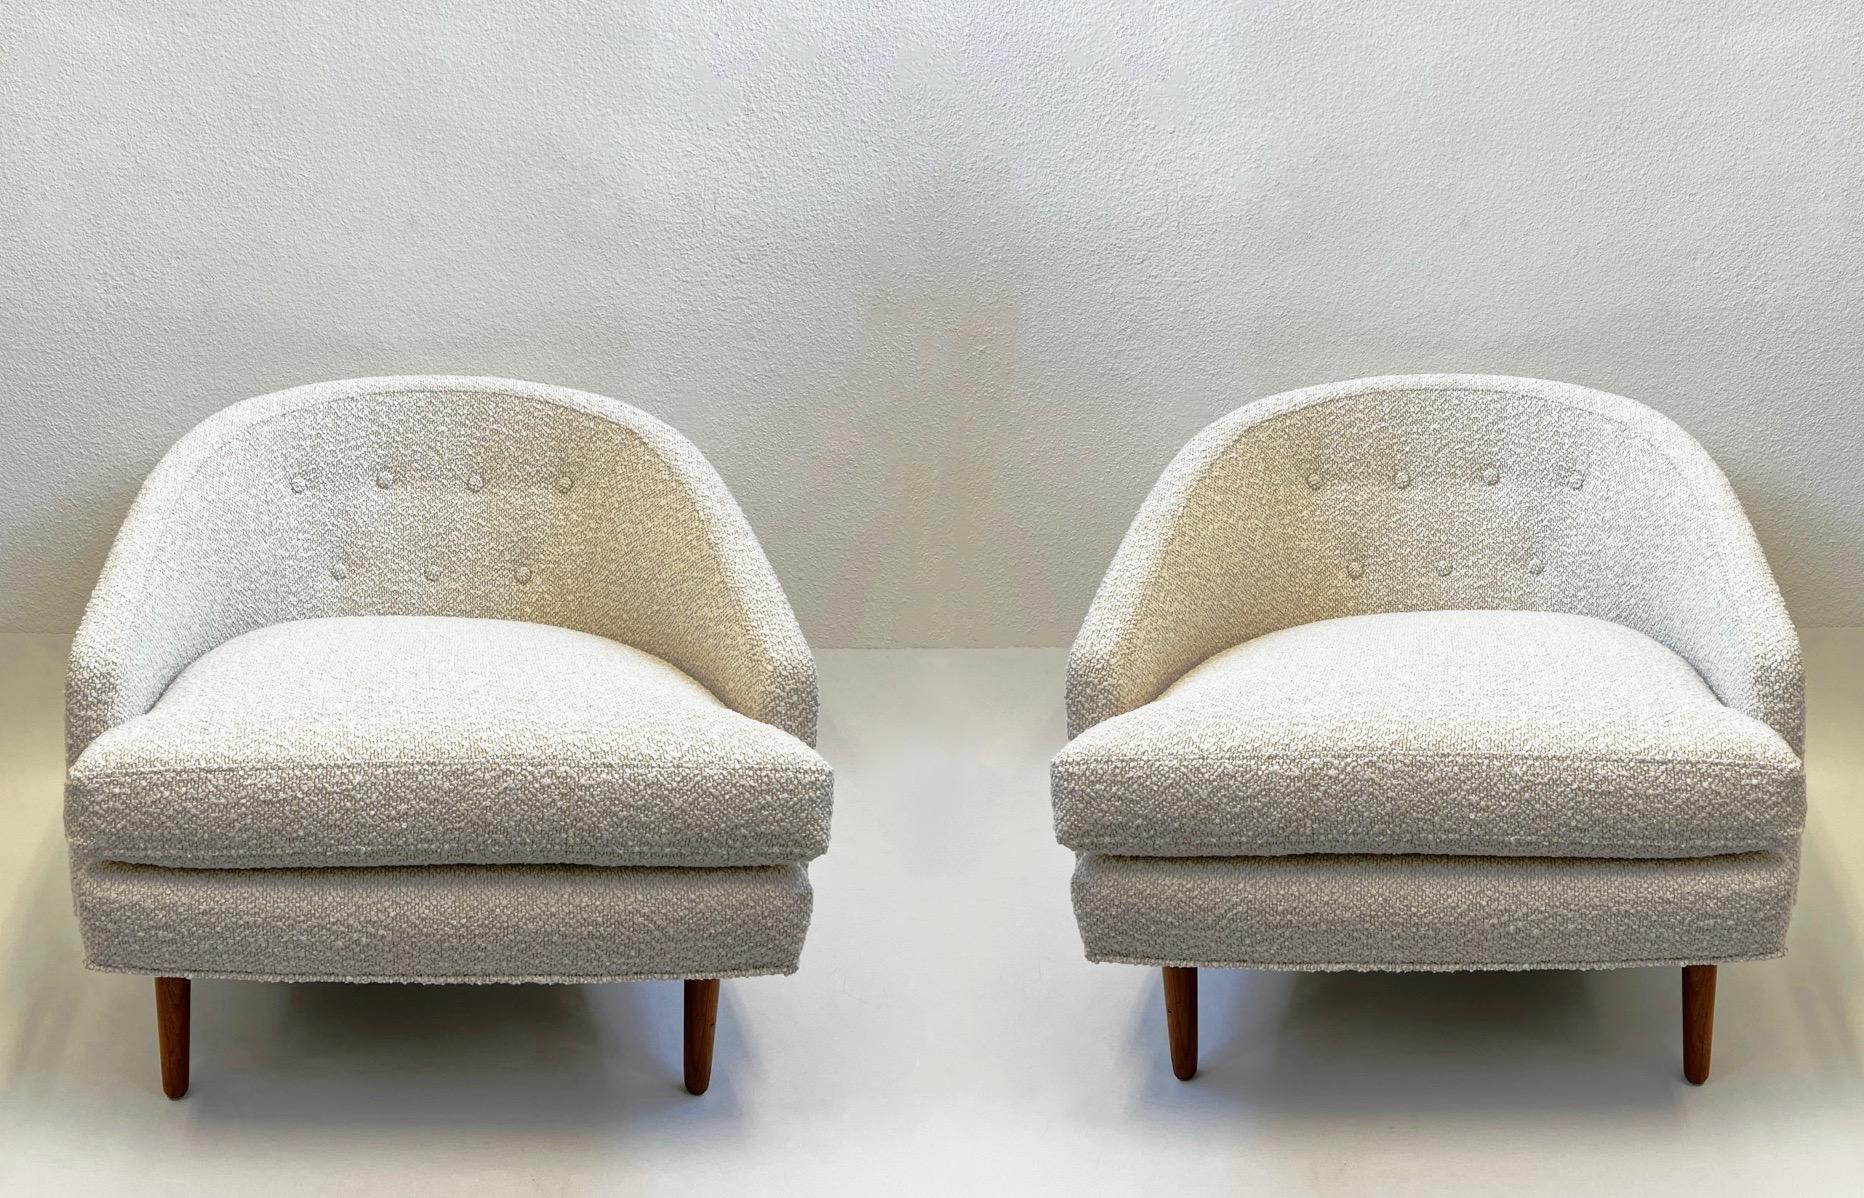 Paire de chaises longues glamour conçues par Kipp Stewart dans les années 1960. 
Nouvellement recouvert d'un tissu blanc cassé. Les pieds en noyer sont dans leur état d'origine, ils présentent une légère usure due à l'âge. 

Dimensions : 31